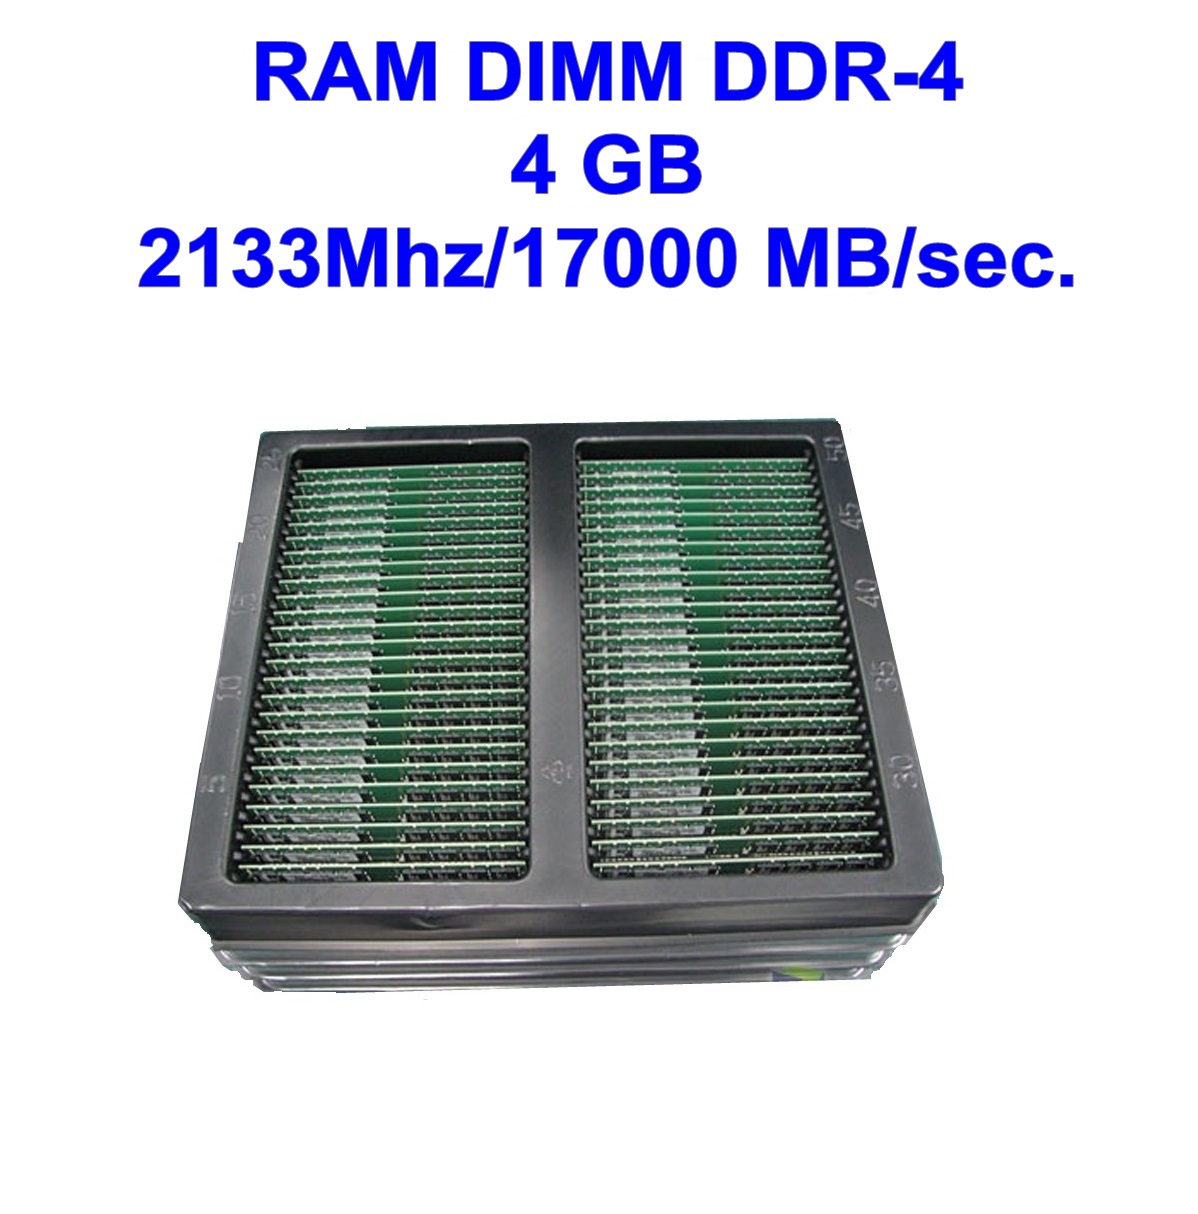 DIMM DDR-4 4 GB 2133Mhz/17000 MB/sec.